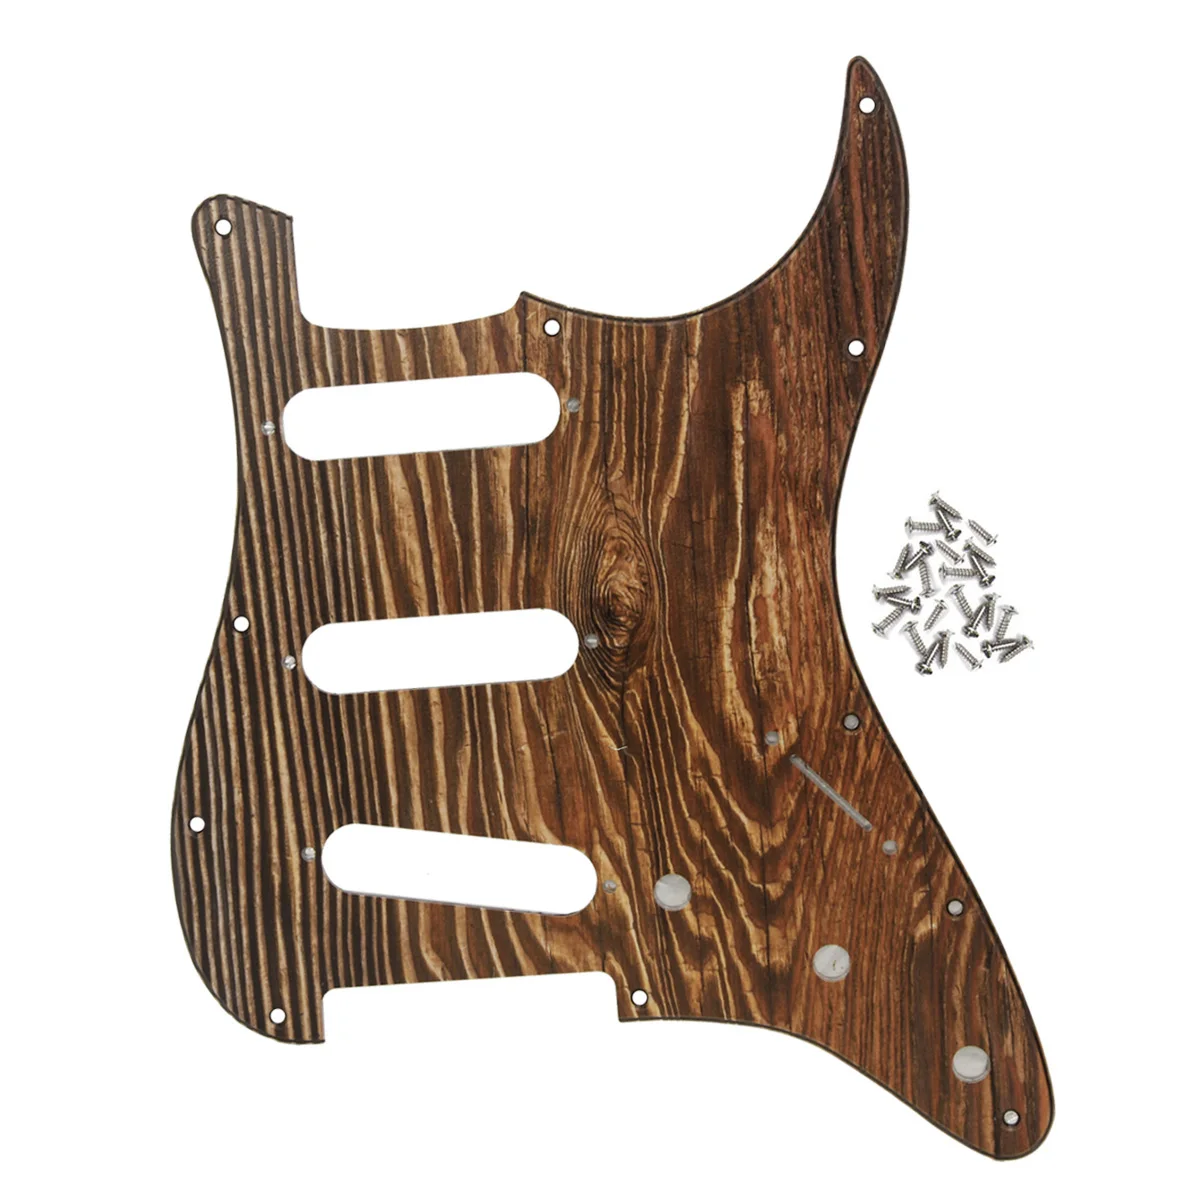 FLEOR древесины Цвет SSS защитная пластина Strat для гитары гитара защитная пластина с винтами для 11 Отверстие Страт Стиль Запчасти для электрической гитары